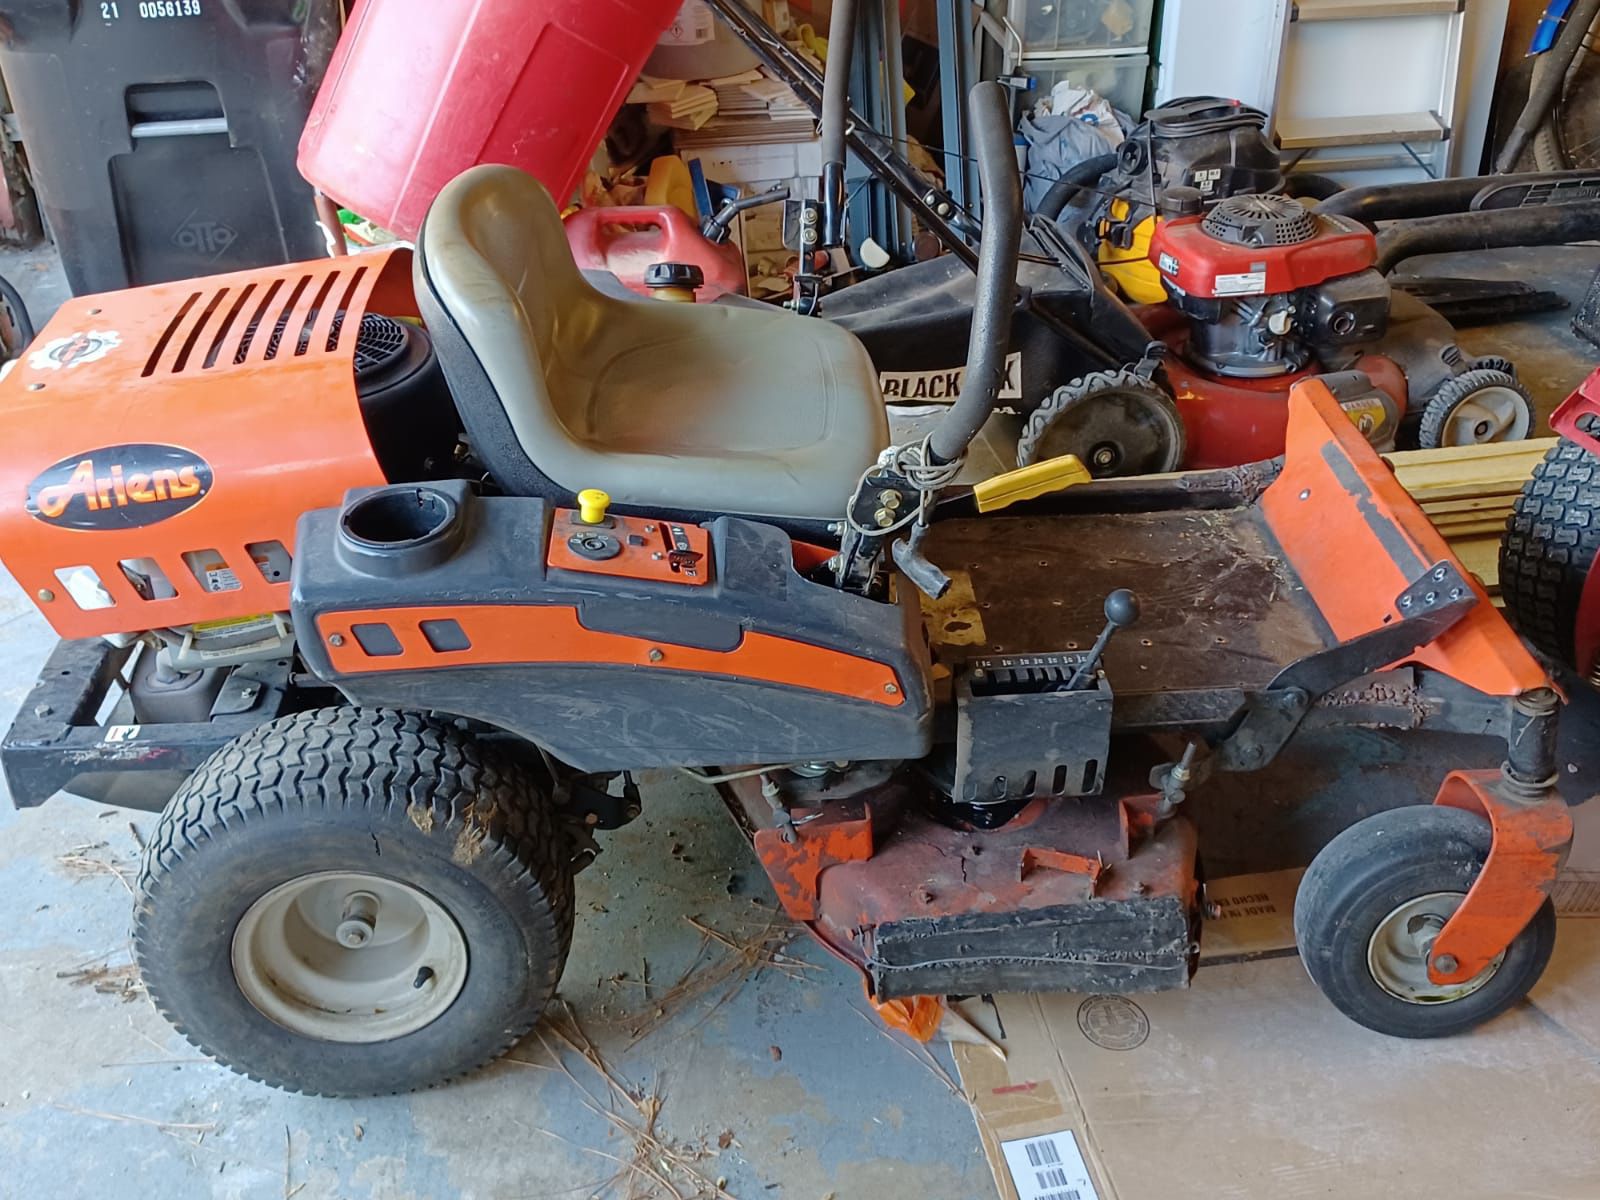 Tractor Ariens 32” Industrial sit down mower